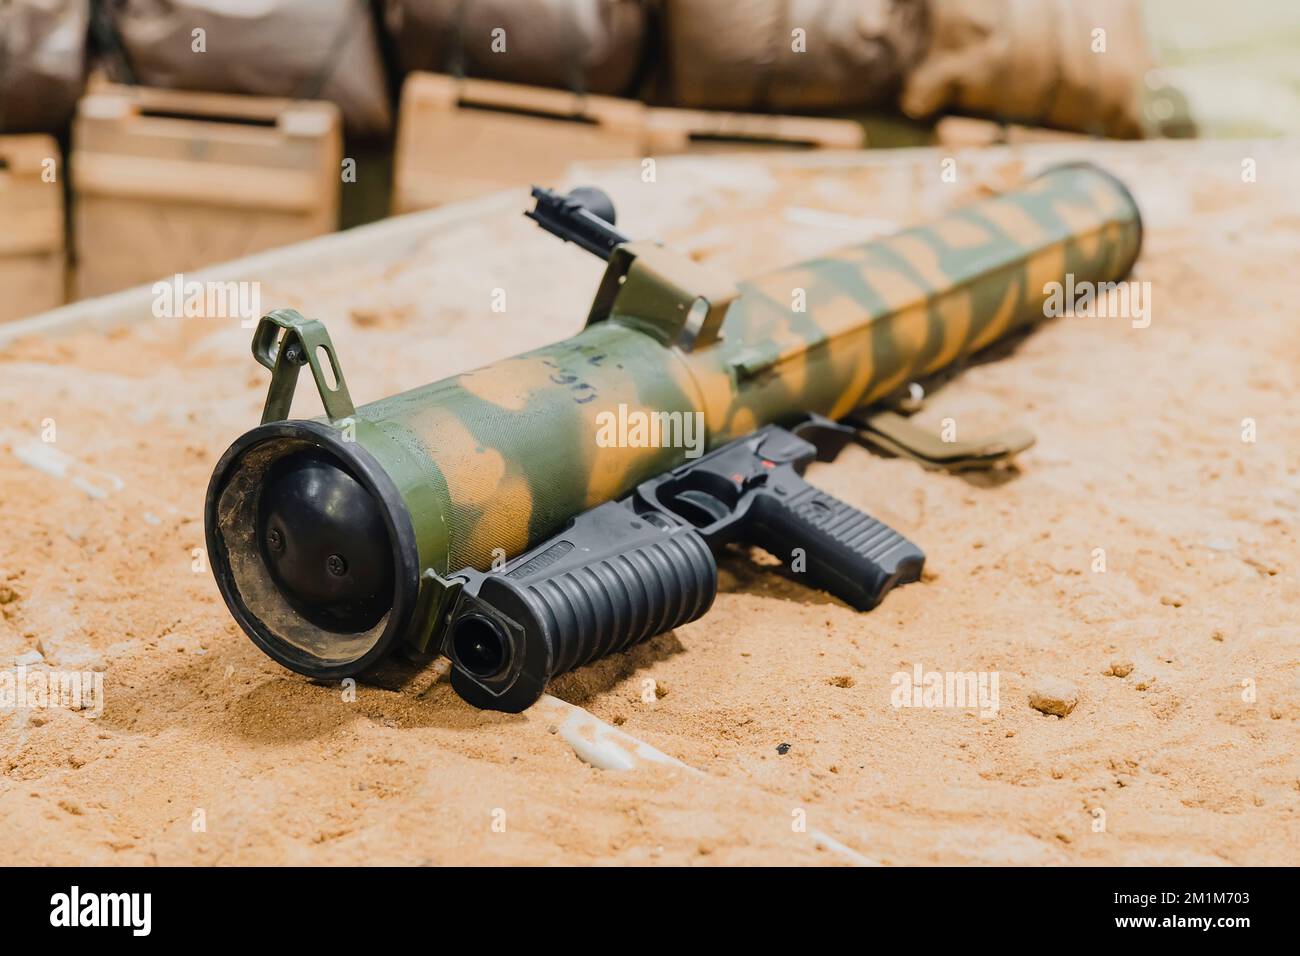 Militaire, tir RPG anti char grenade lanceur couché sur le sable. Trophée de guerre. Fournitures militaires d'armes lourdes Banque D'Images